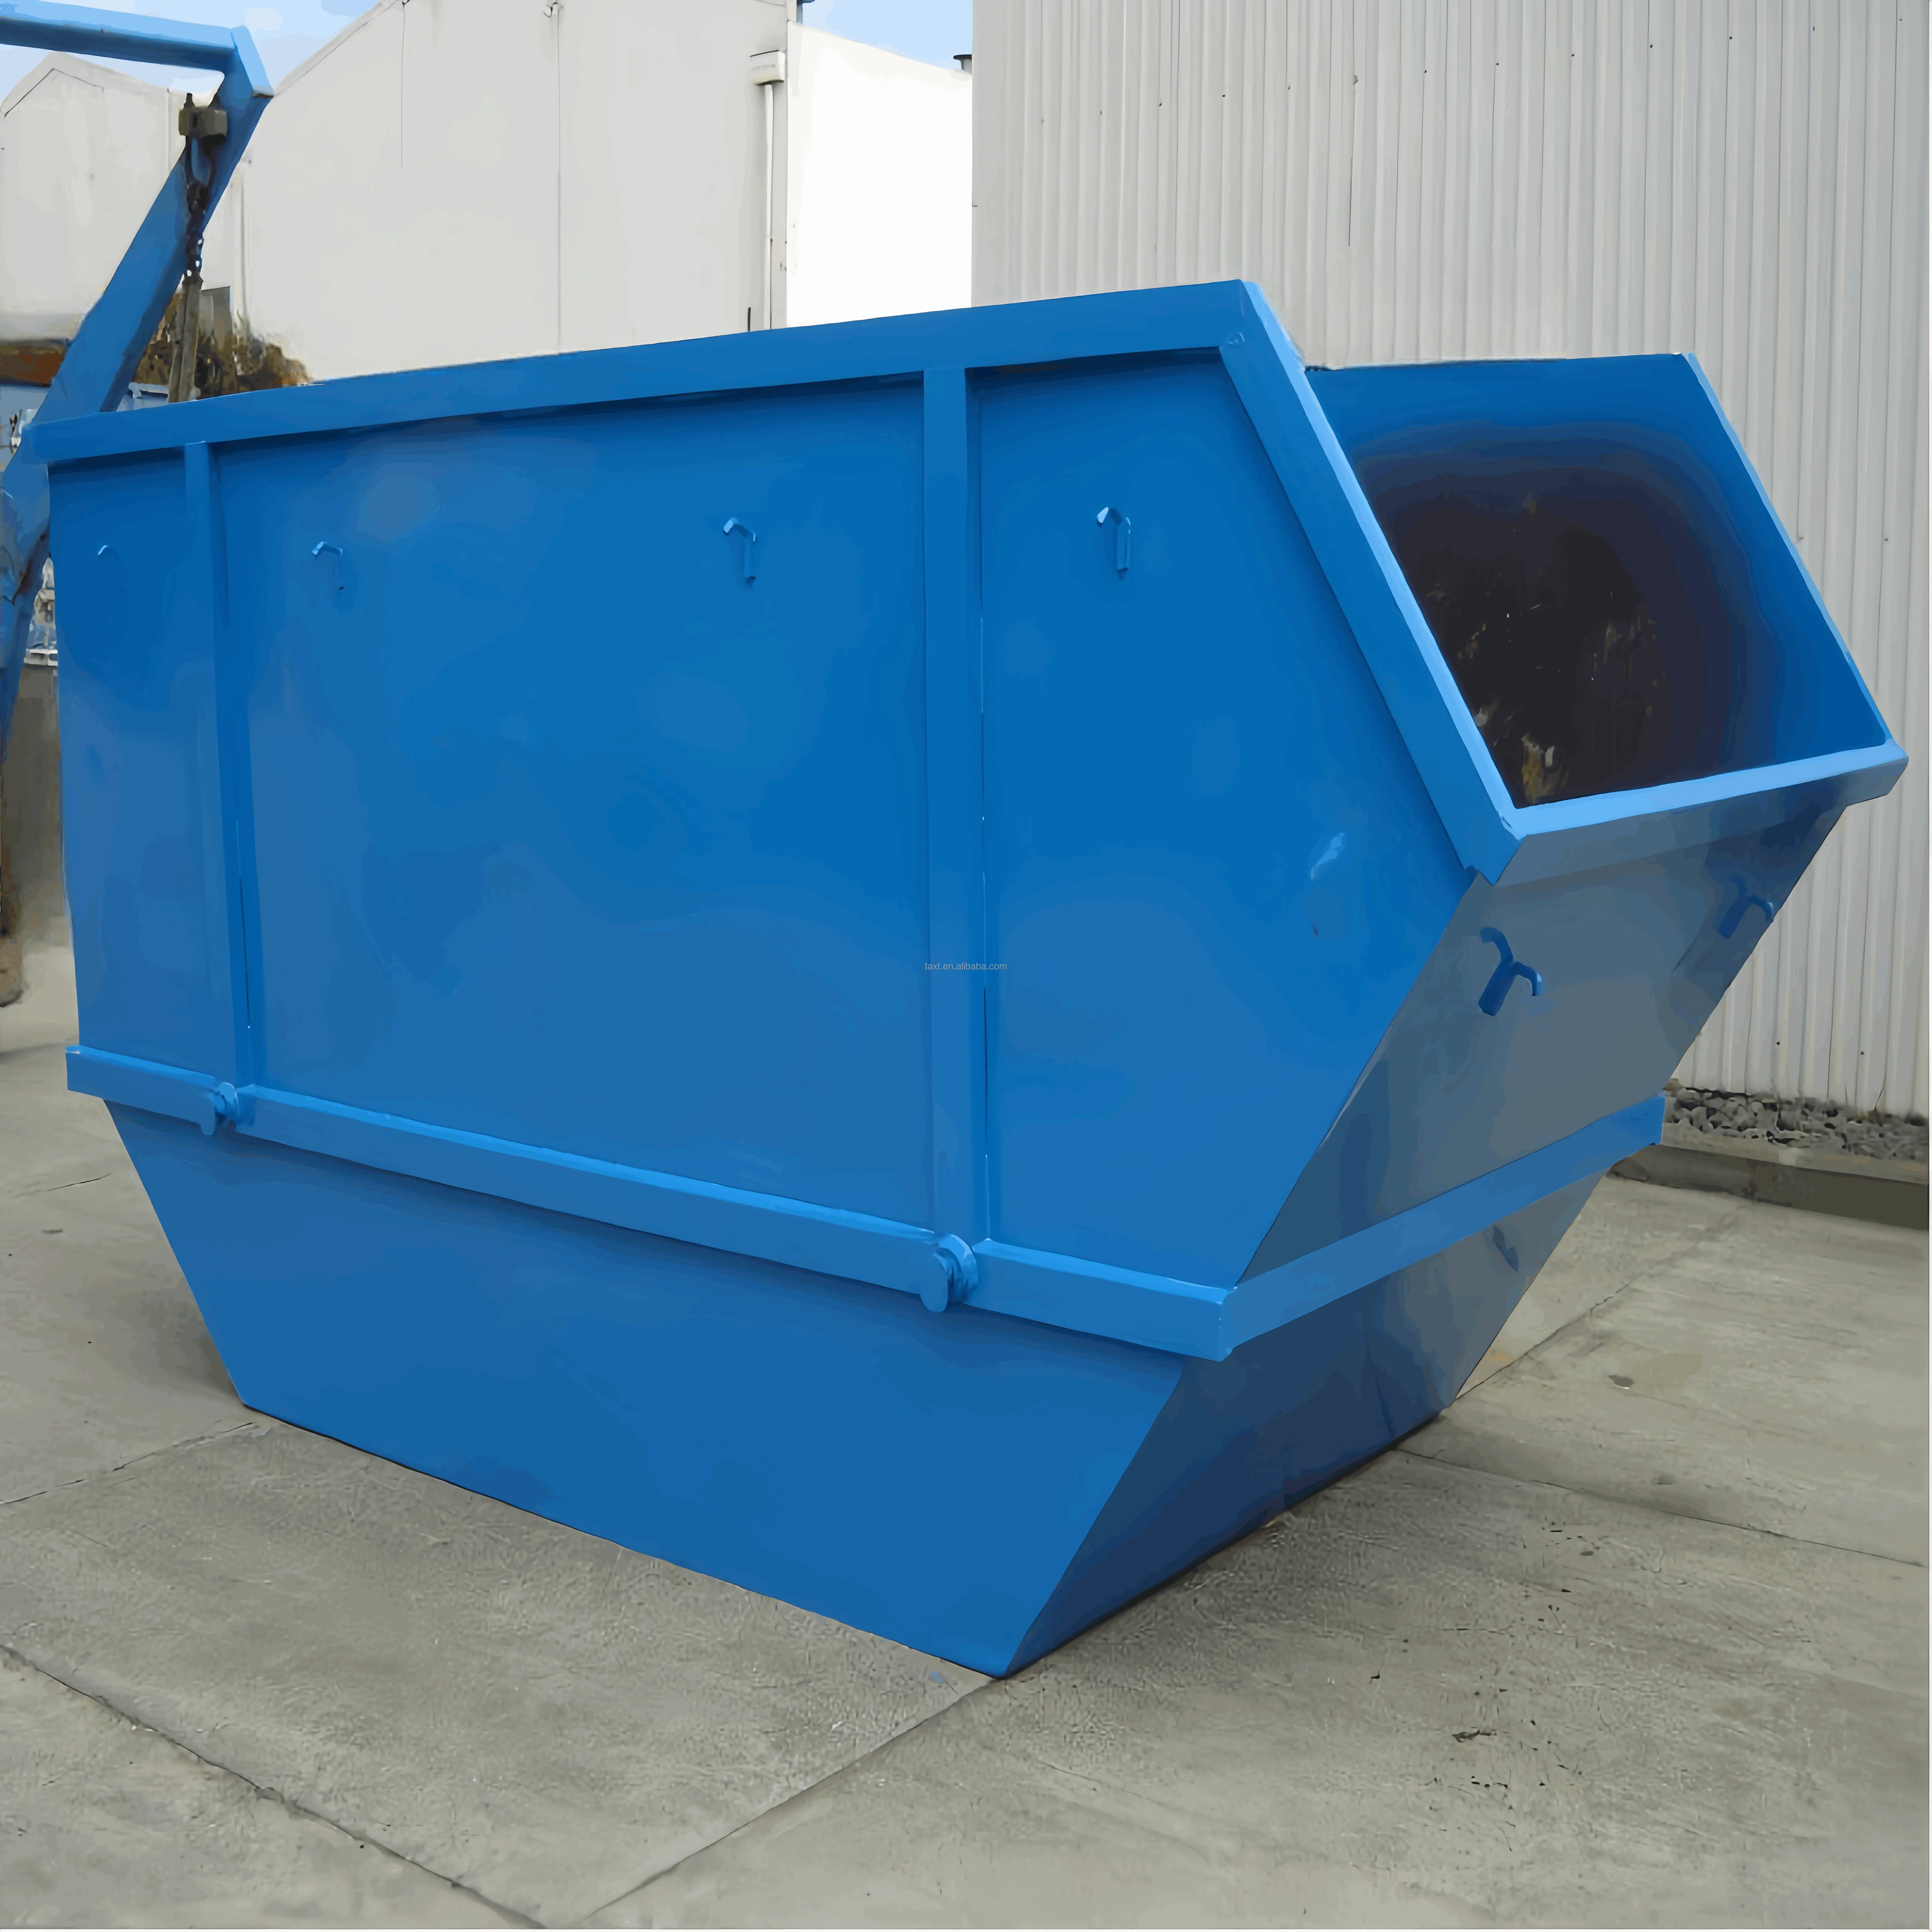 Semprotan wadah logam kualitas baik dicat tong sampah Dumpster untuk mesin perawatan limbah padat